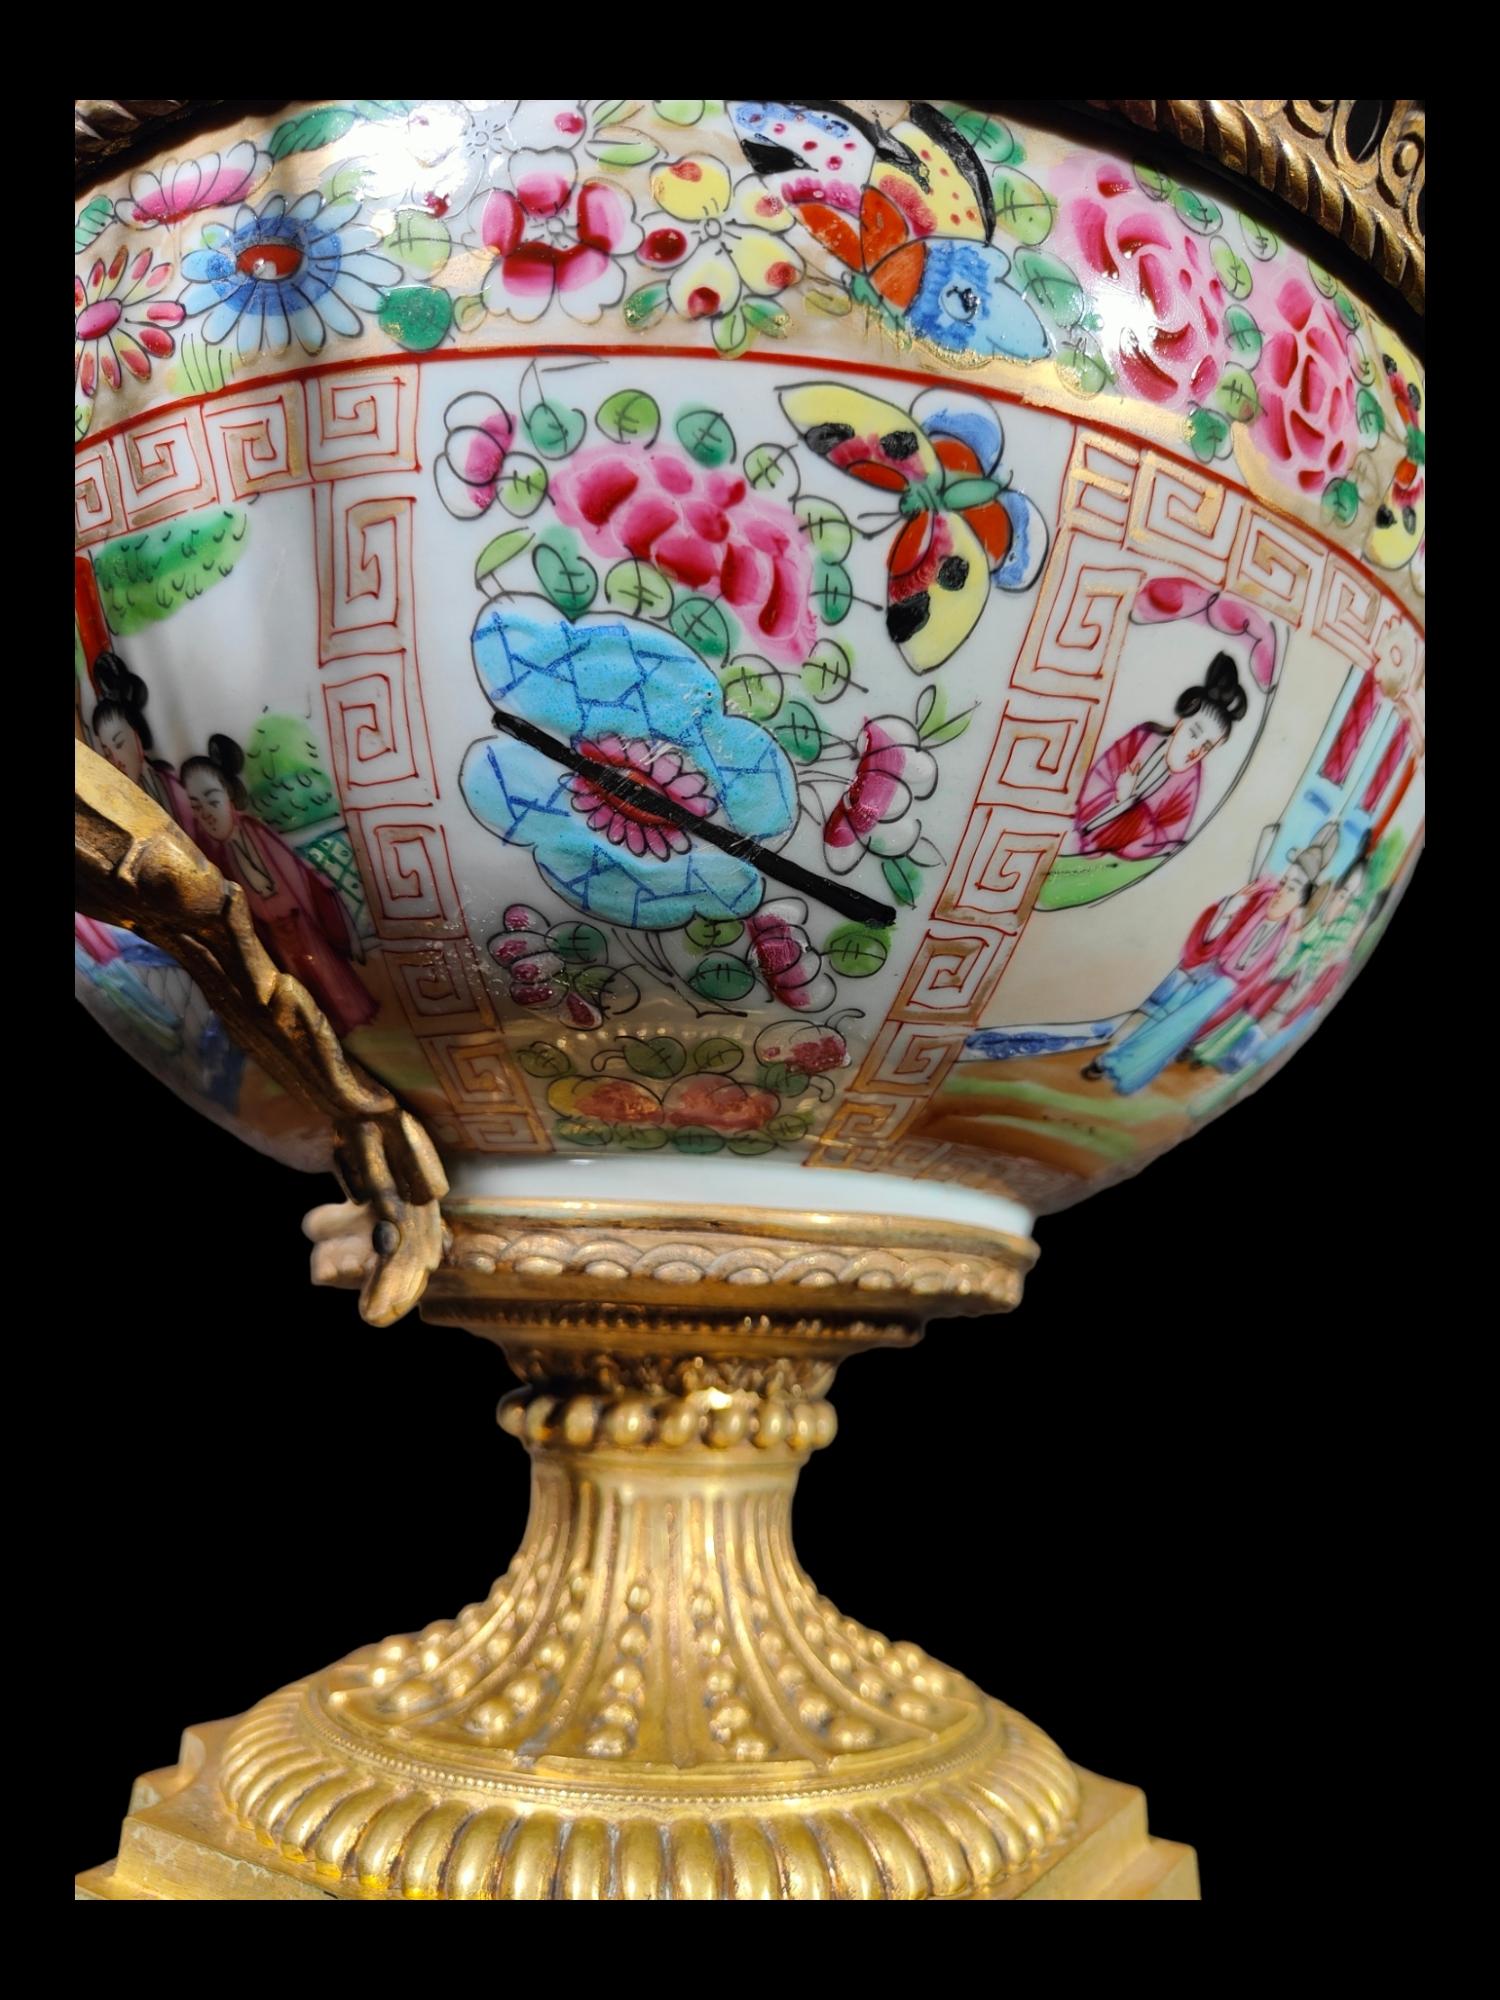 Bol à punch en porcelaine chinoise 19e siècle
Grand bol en porcelaine chinoise pour l'exportation, monté en bronze doré, du 19e siècle. La porcelaine est en excellent état, sans cassure ni défaut. Dimensions : 42x34x32 cm.